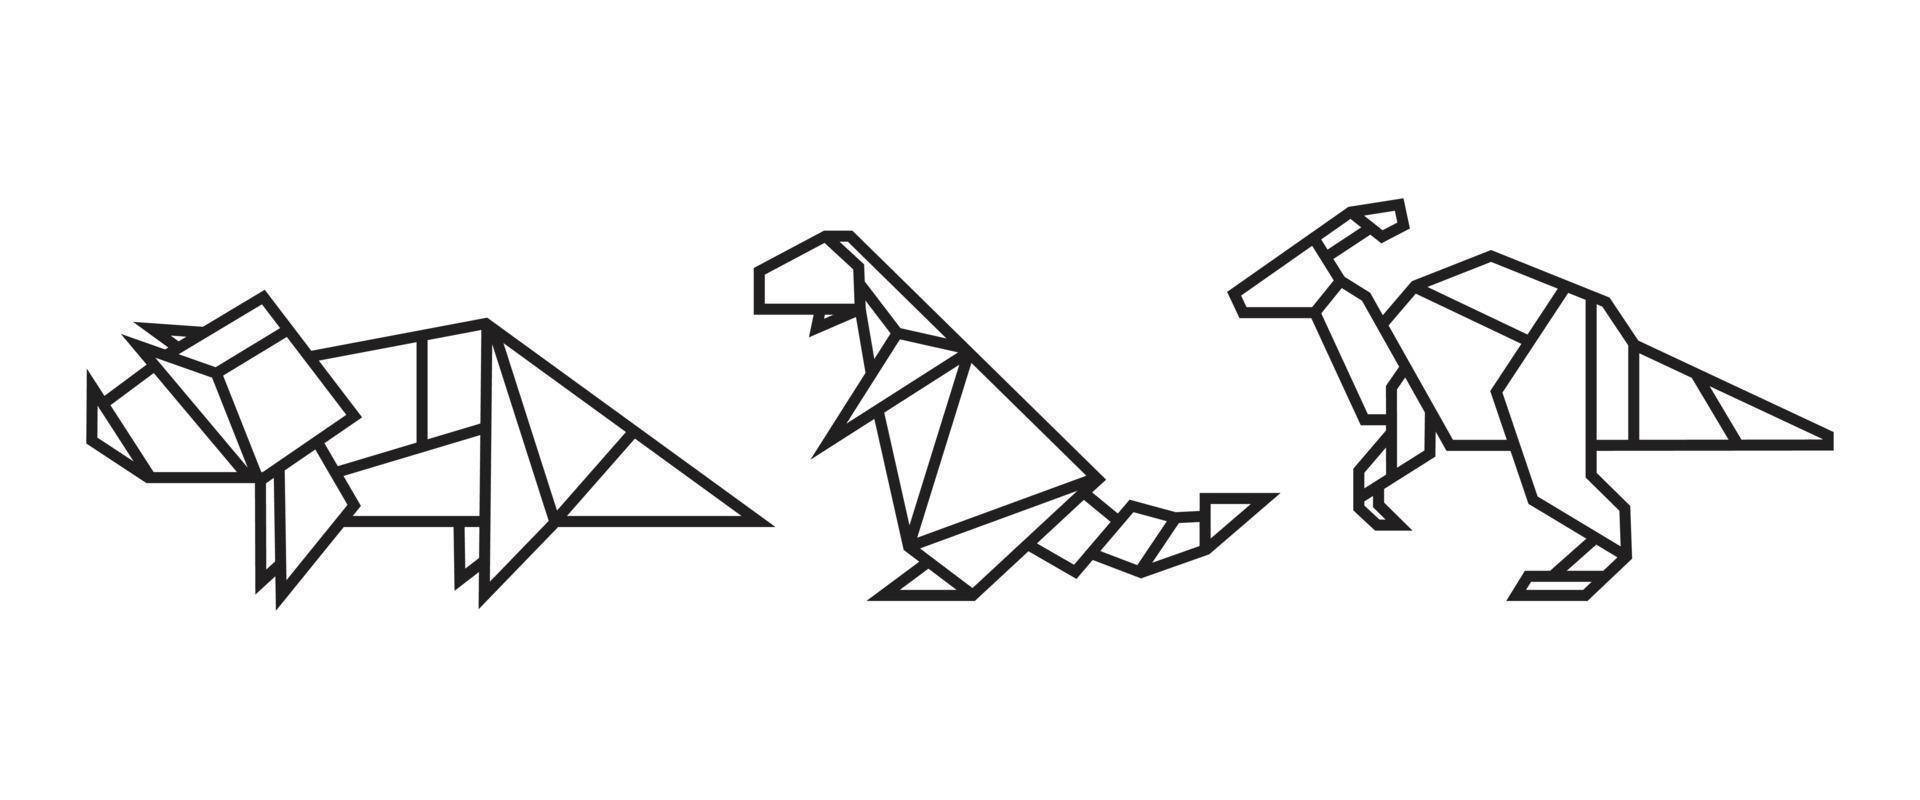 illustrazioni di dinosauri in stile origami vettore